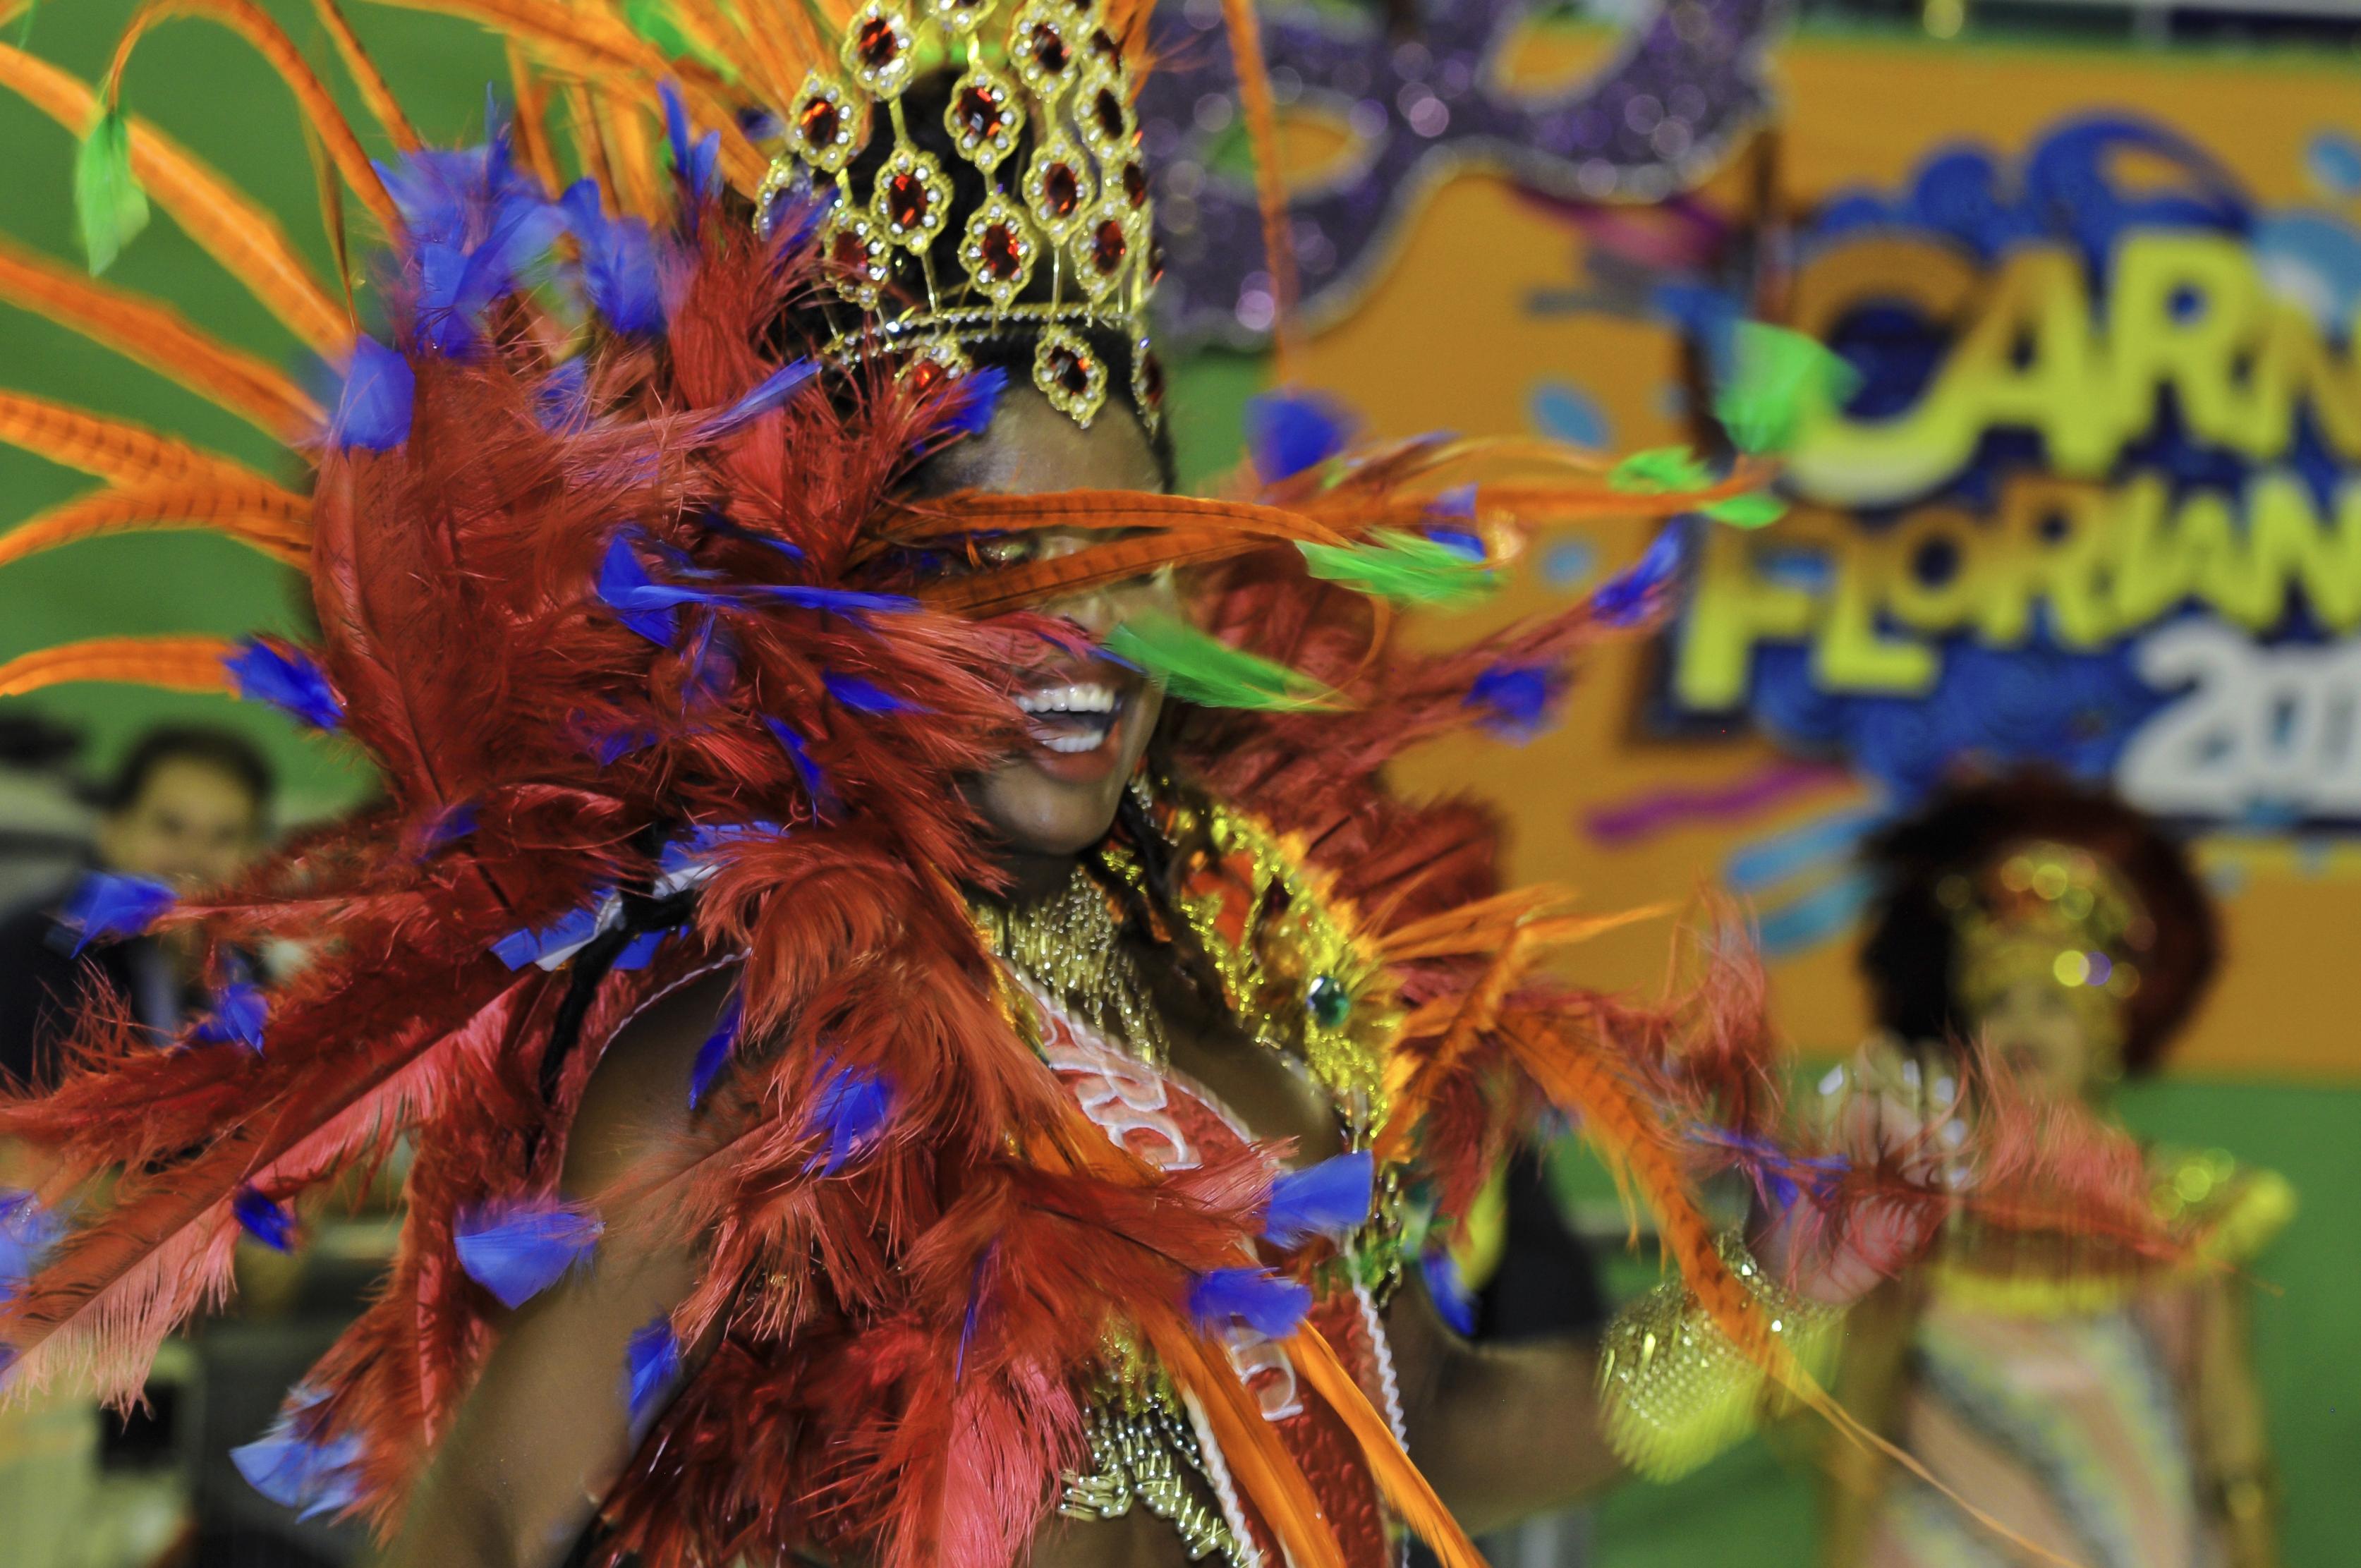 Suurimmat ja kuuluisimmat karnevaalit ovat Rio de Janeirossa. Kuva:iStock.